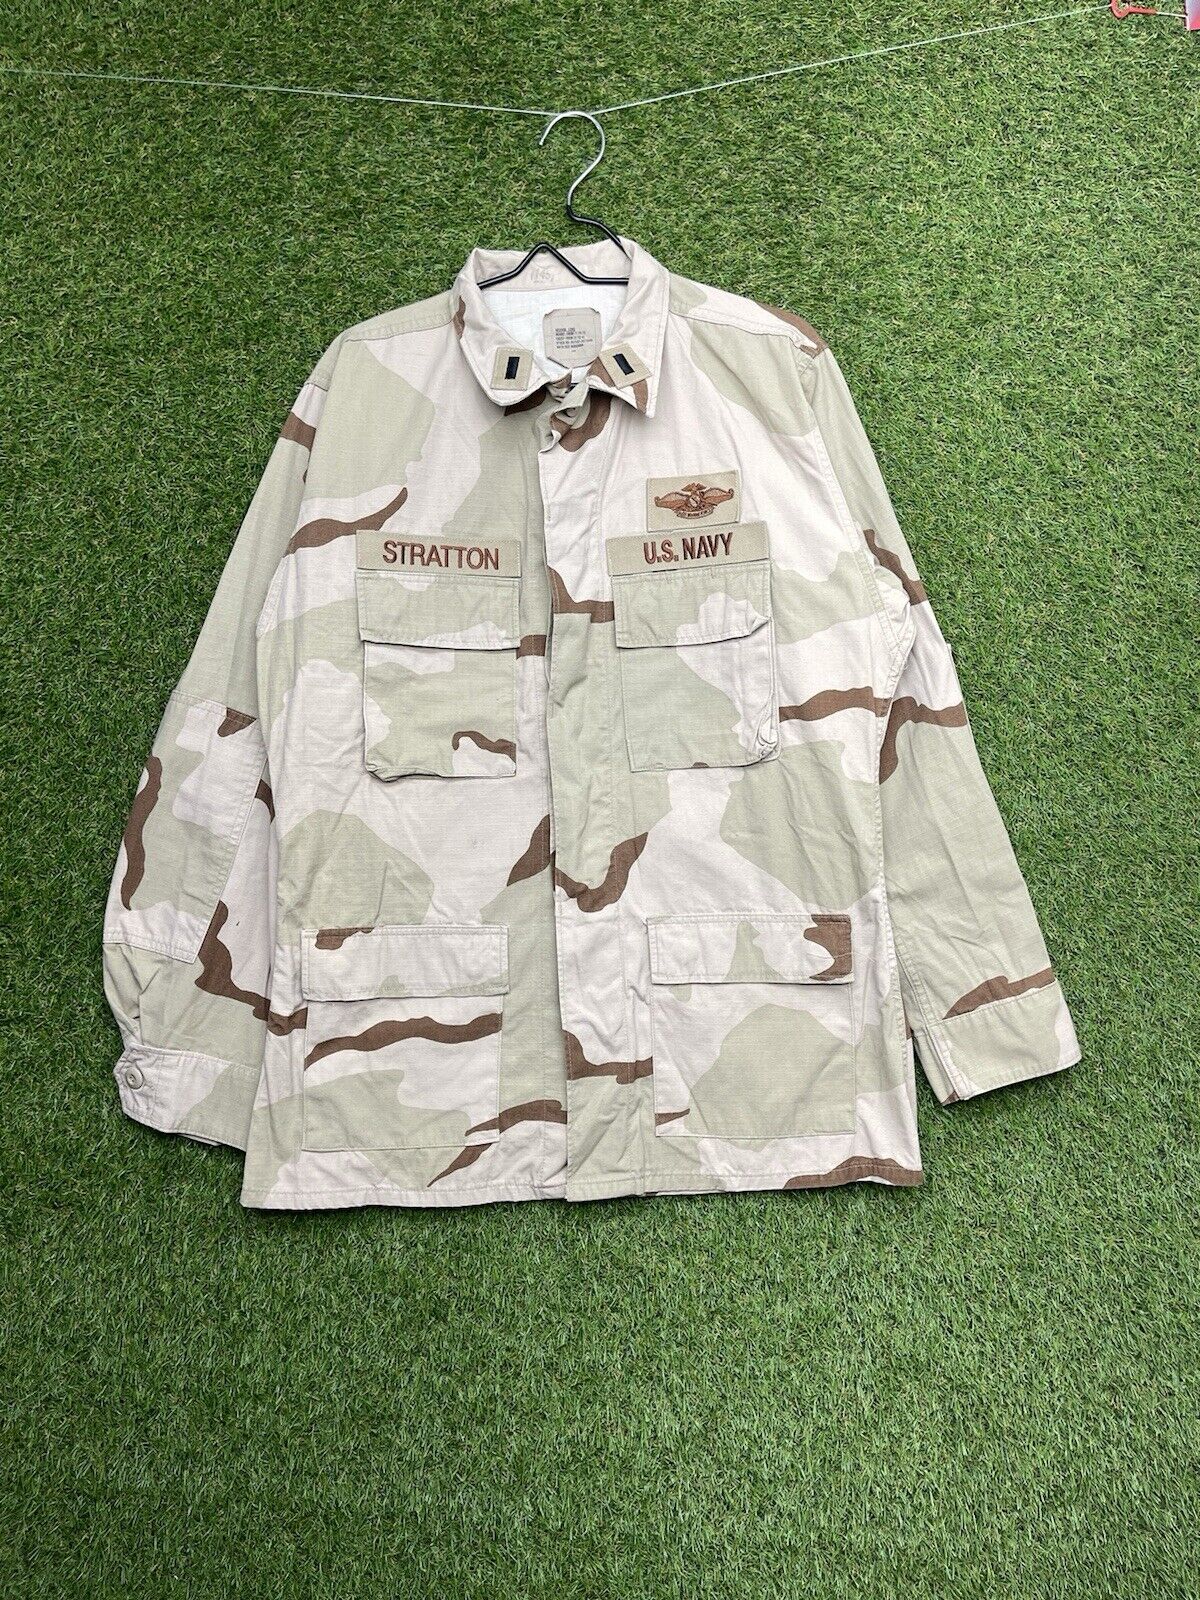 Vintage US Air Force Desert Camo Jacket Tri Colour Camouflage Size Medium Long